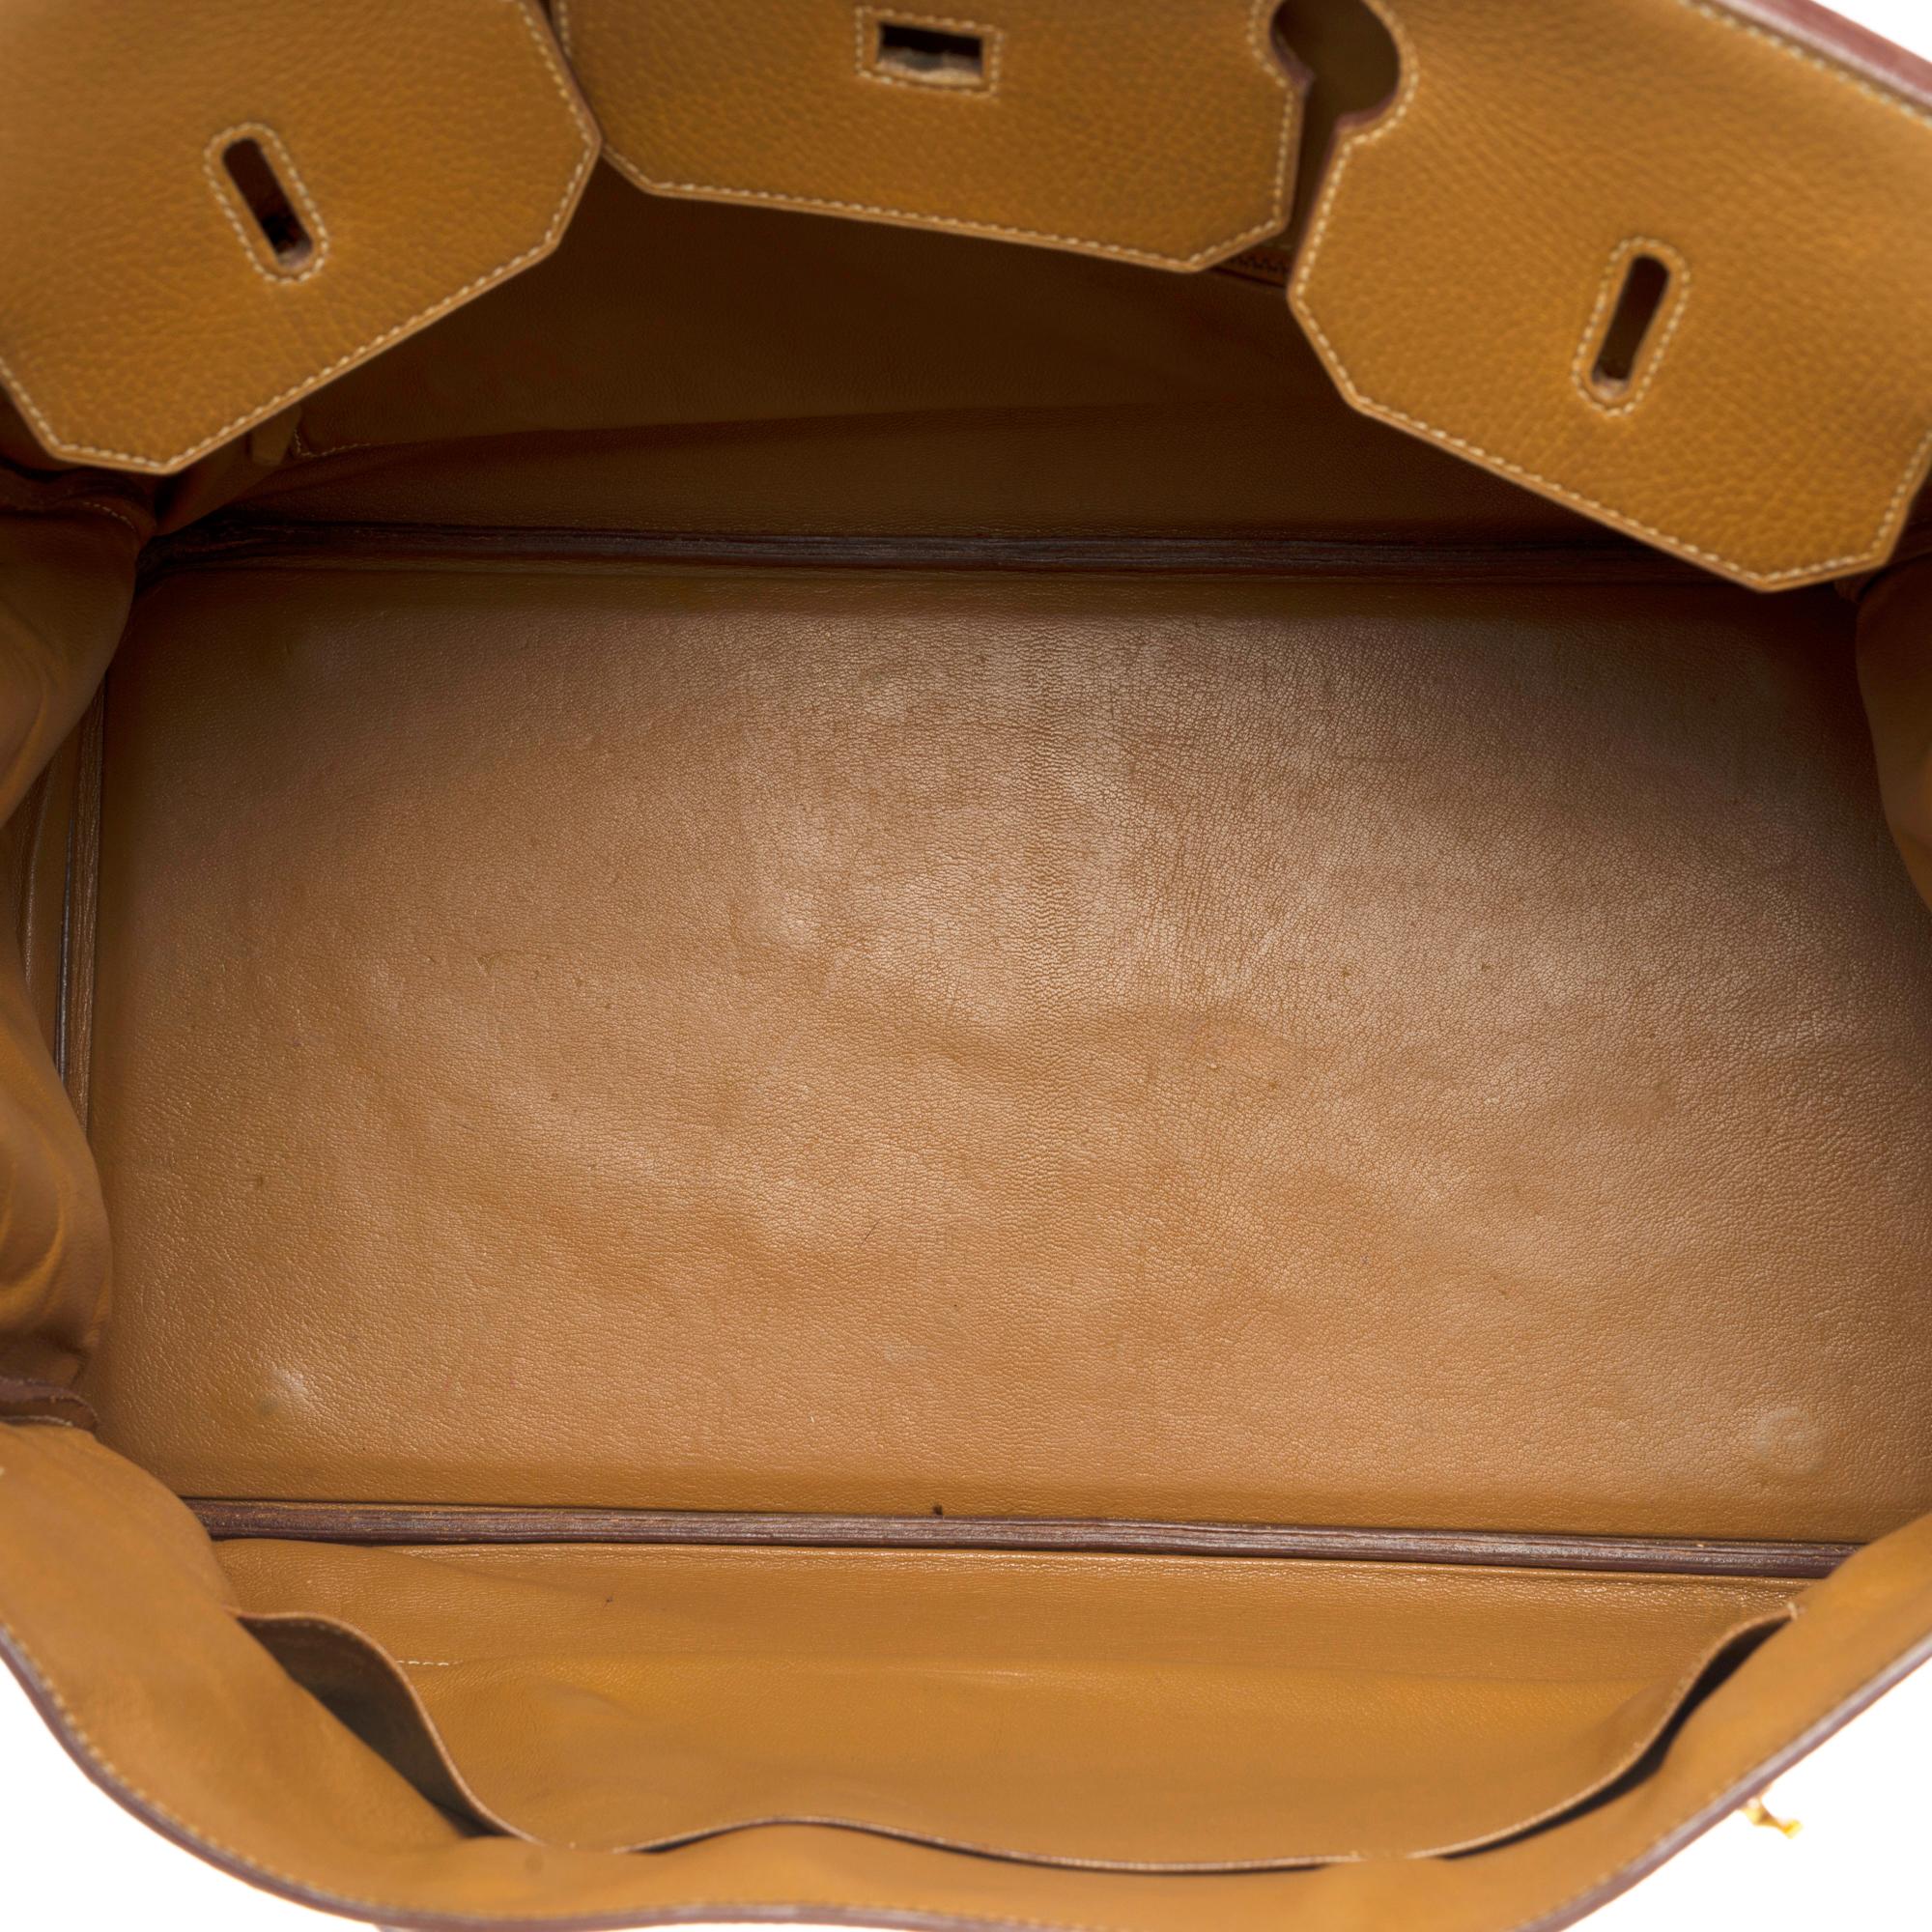 Stunning Hermes Birkin 40cm handbag in Gold Vache d'Ardenne leather, GHW 2